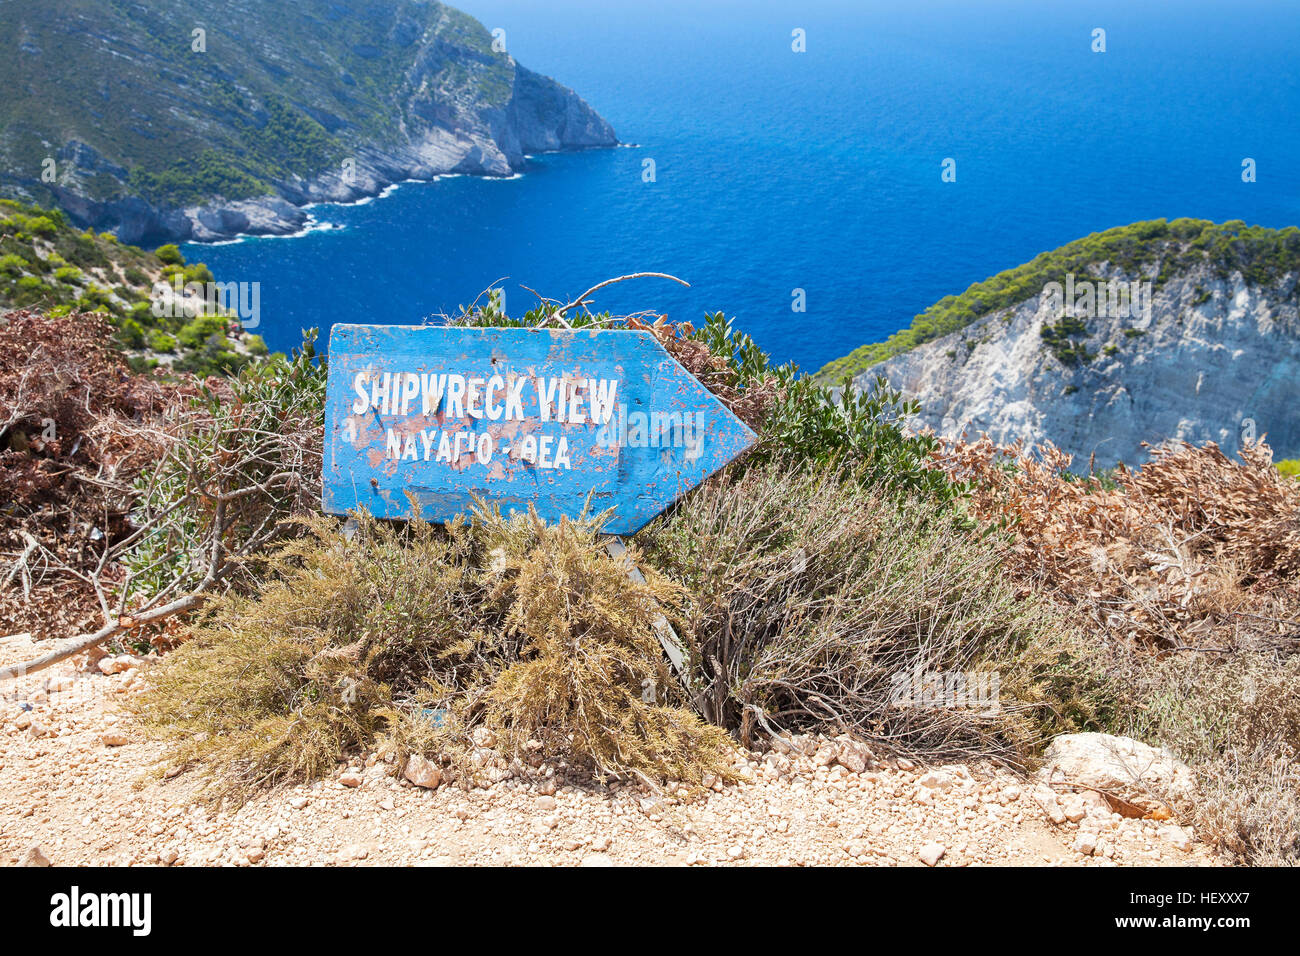 Zakynthos, Grèce - 20 août 2016 : Ancien bleu panneau en bois indique la direction d'épave de vue, la baie de Navagio, Grèce. Landm naturelles les plus populaires Banque D'Images